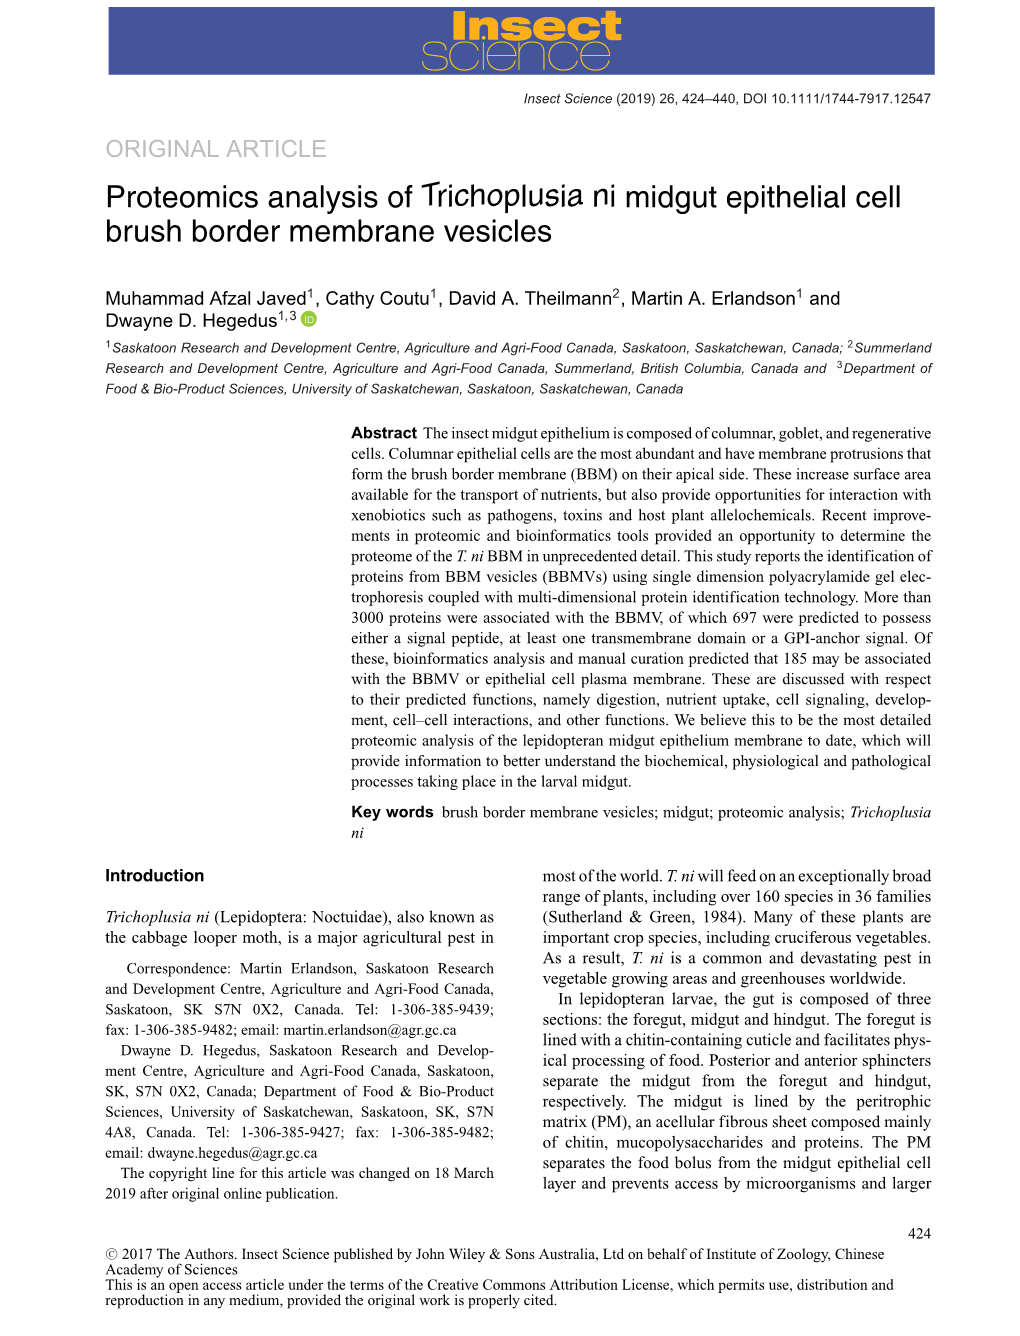 Proteomics Analysis of Trichoplusia Ni Midgut Epithelial Cell Brush Border Membrane Vesicles